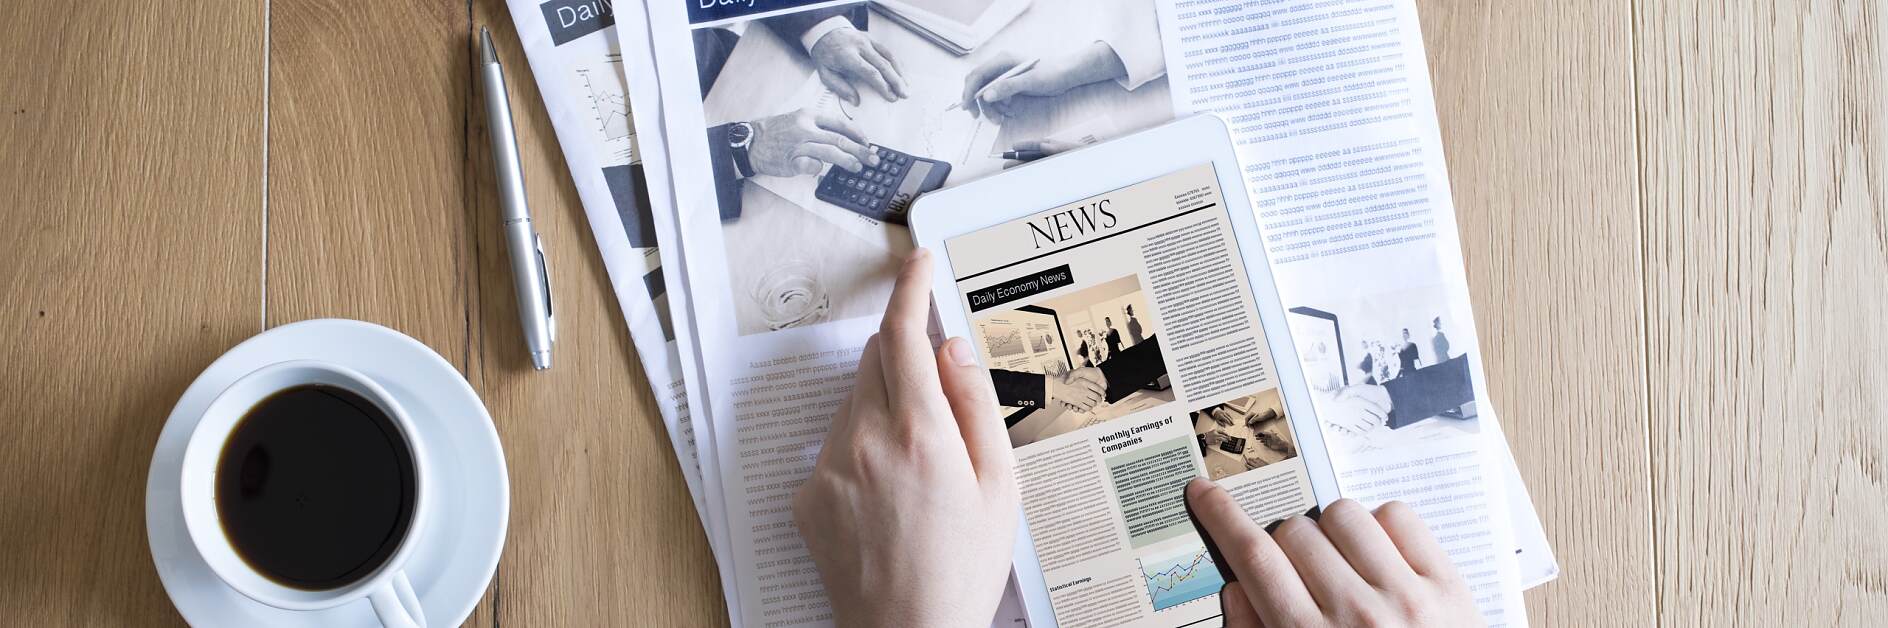 Συνδυασμός Εφημερίδας και iPad Χαρτί και Εκτύπωση